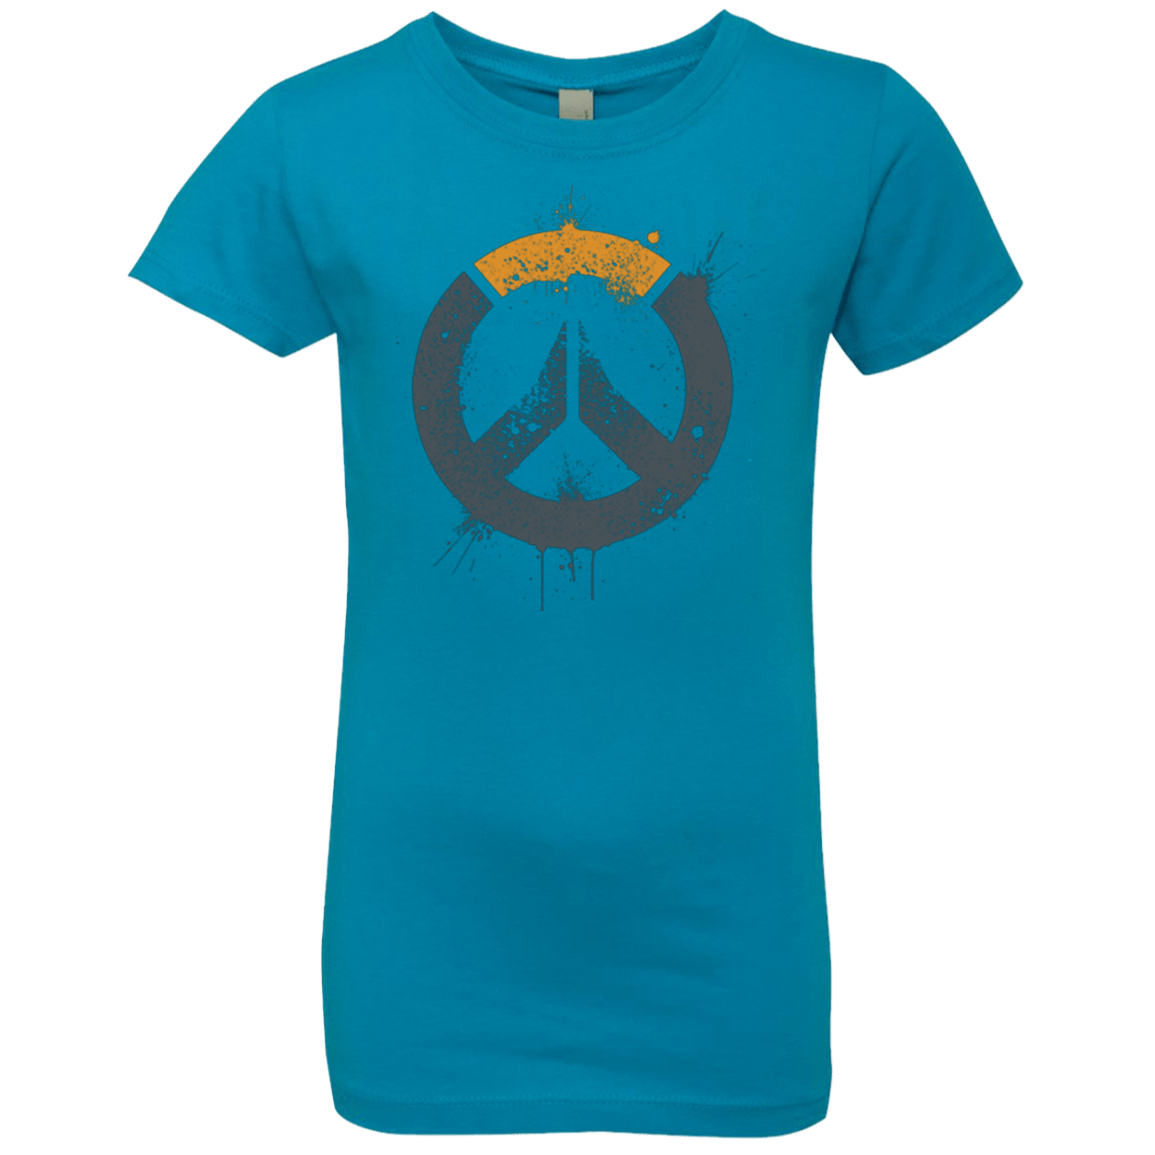 T-Shirts Turquoise / YXS Overwatch Girls Premium T-Shirt